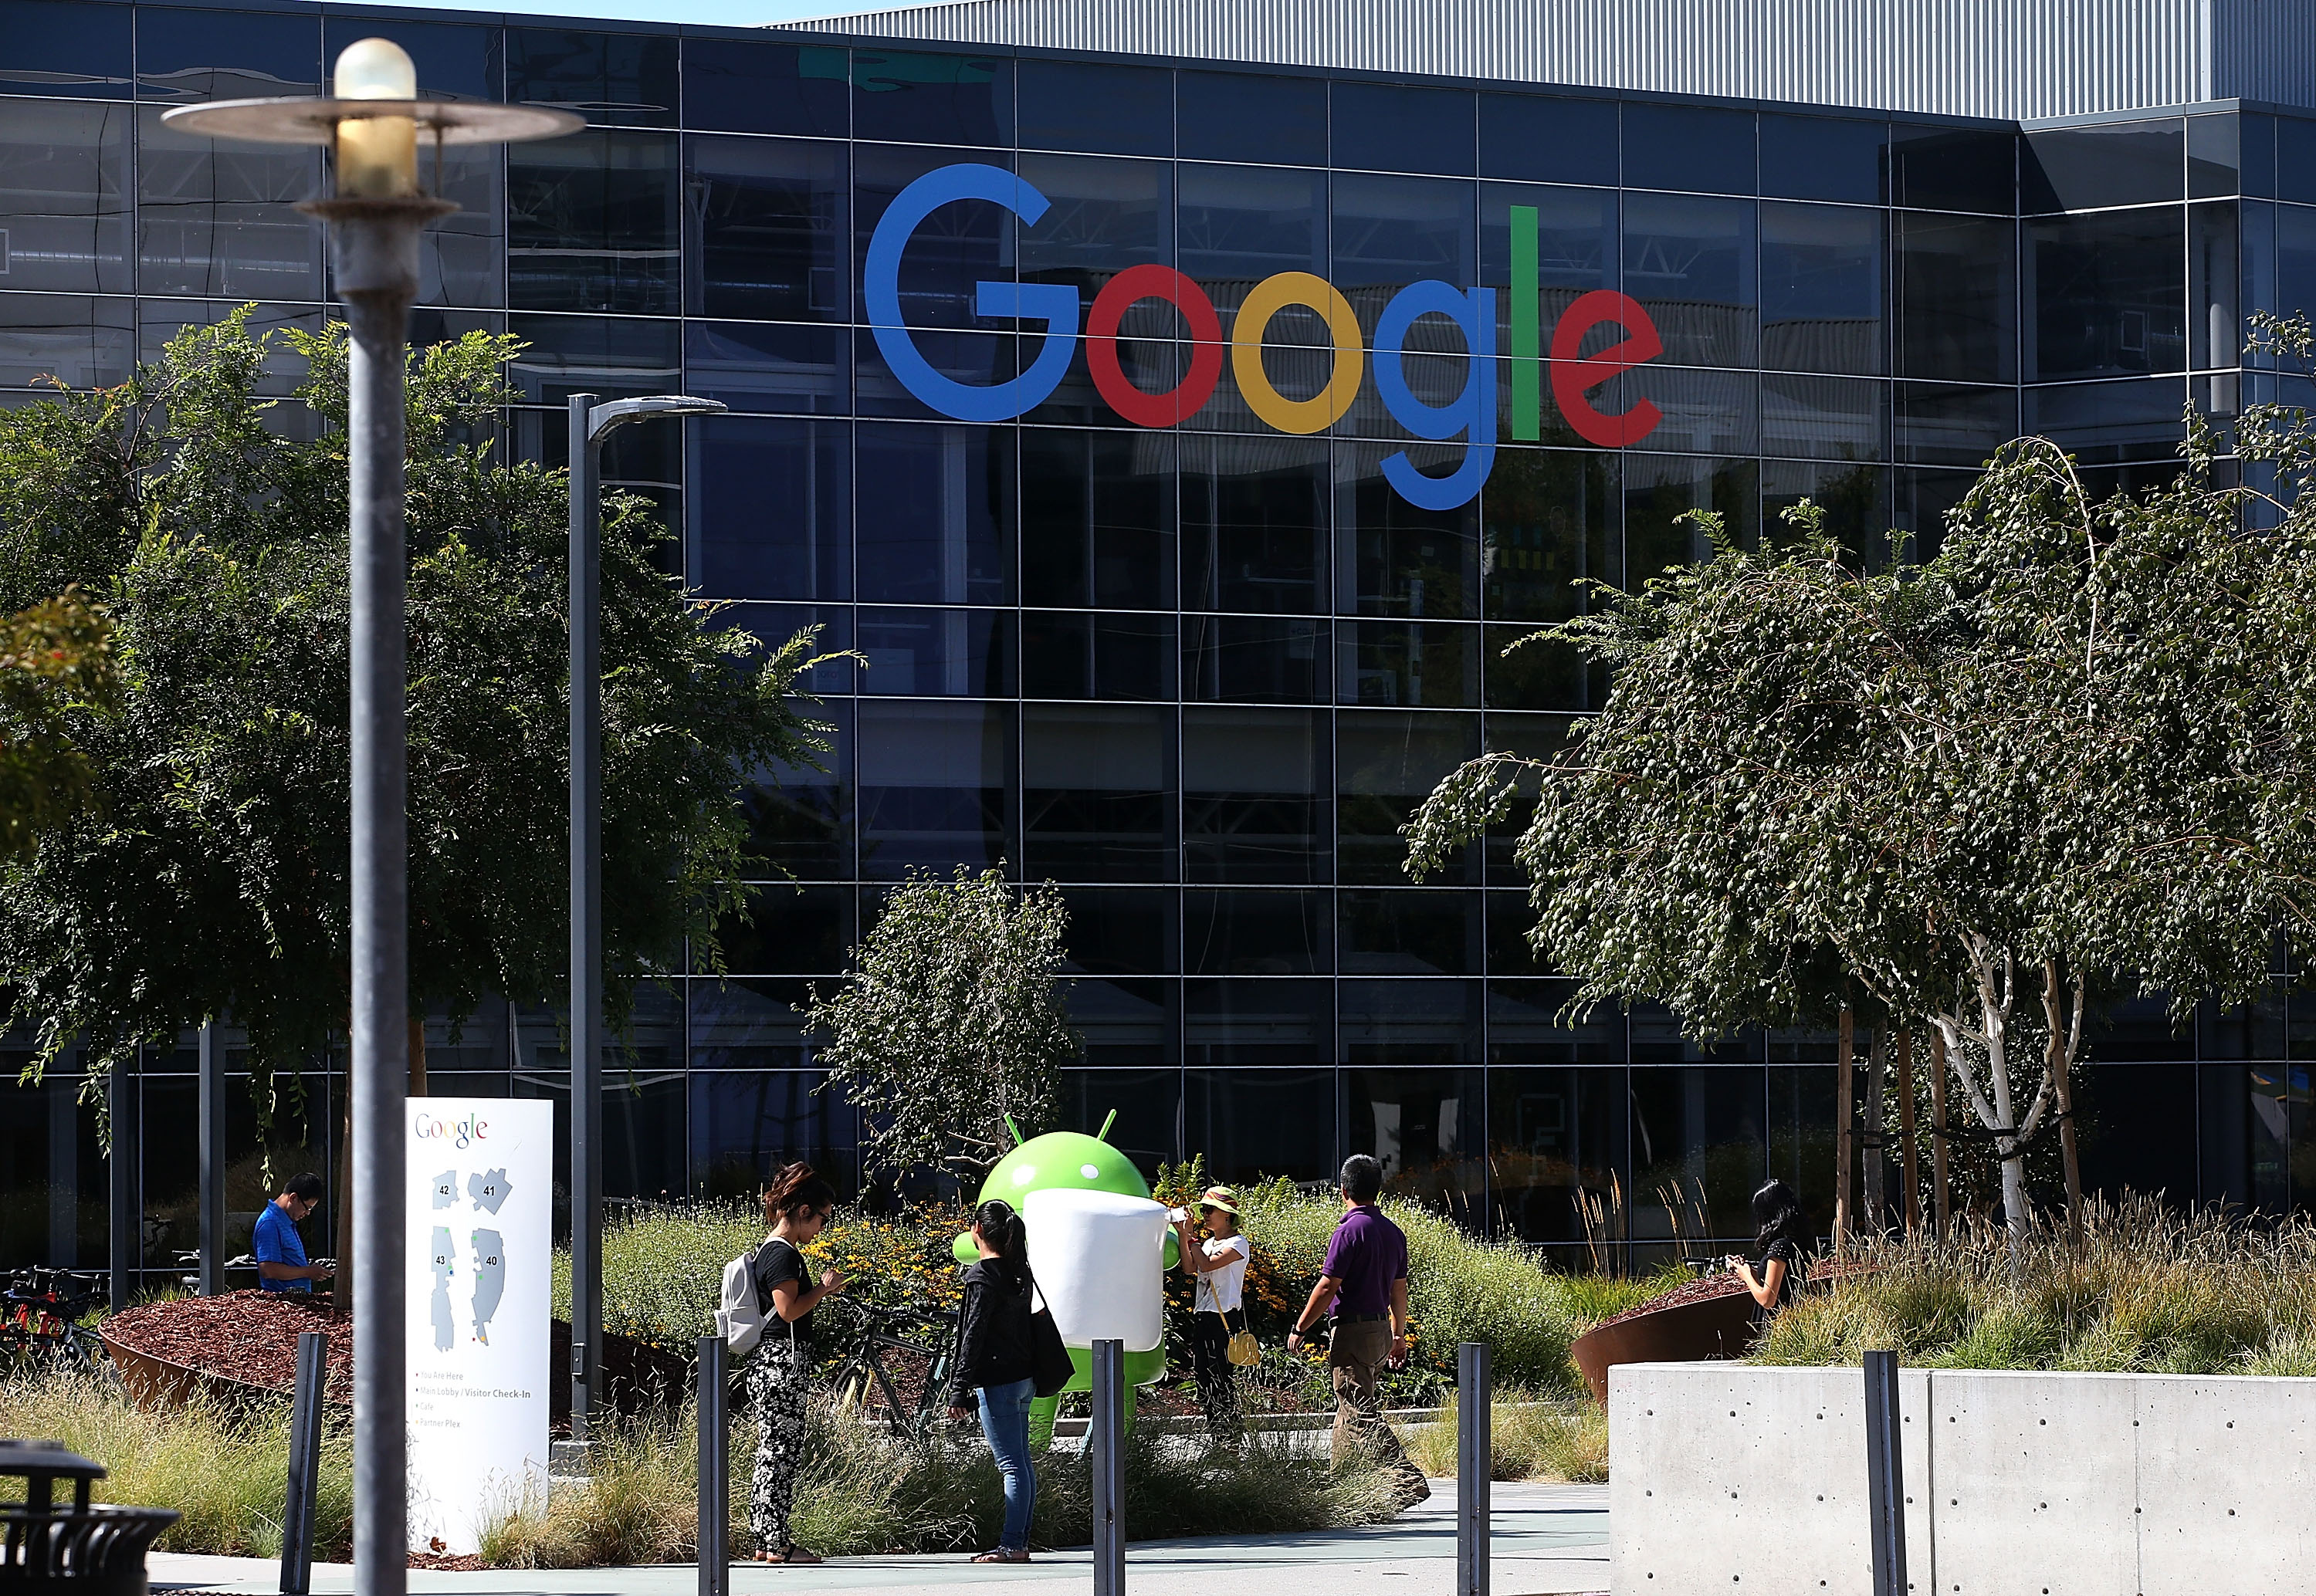 Google hat den 10 Jahre langen Rechtsstreit gegen die Autoren gewonnen